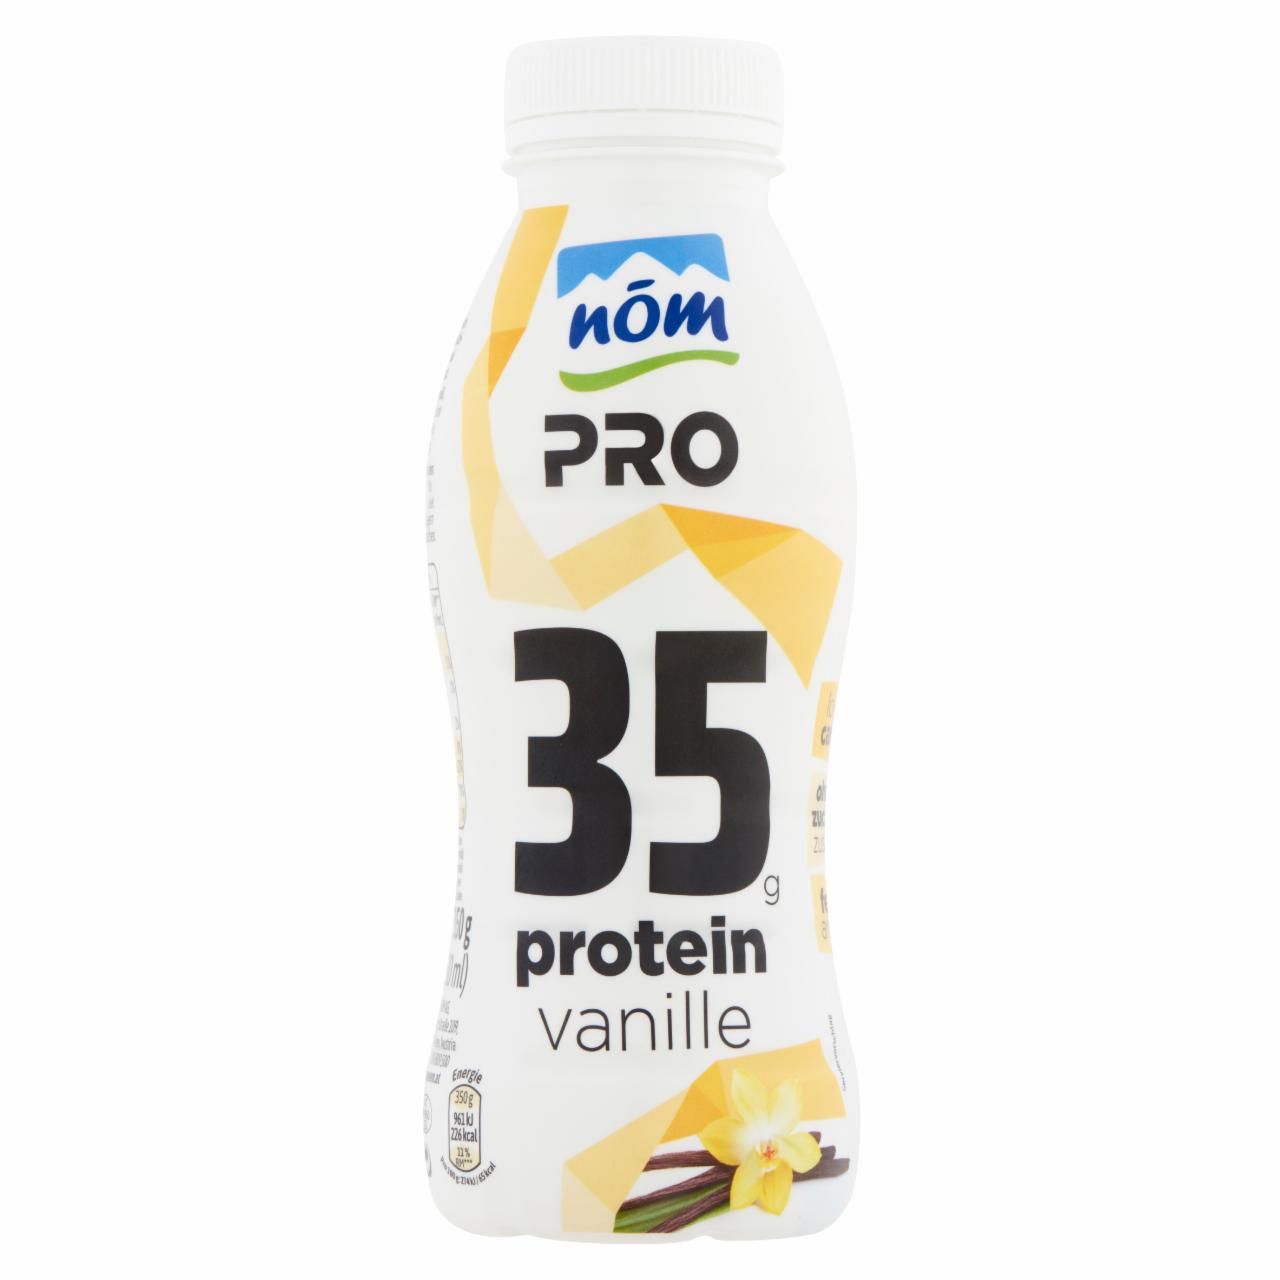 Képek - NÖM Pro UHT vaníliás protein ital 350 g